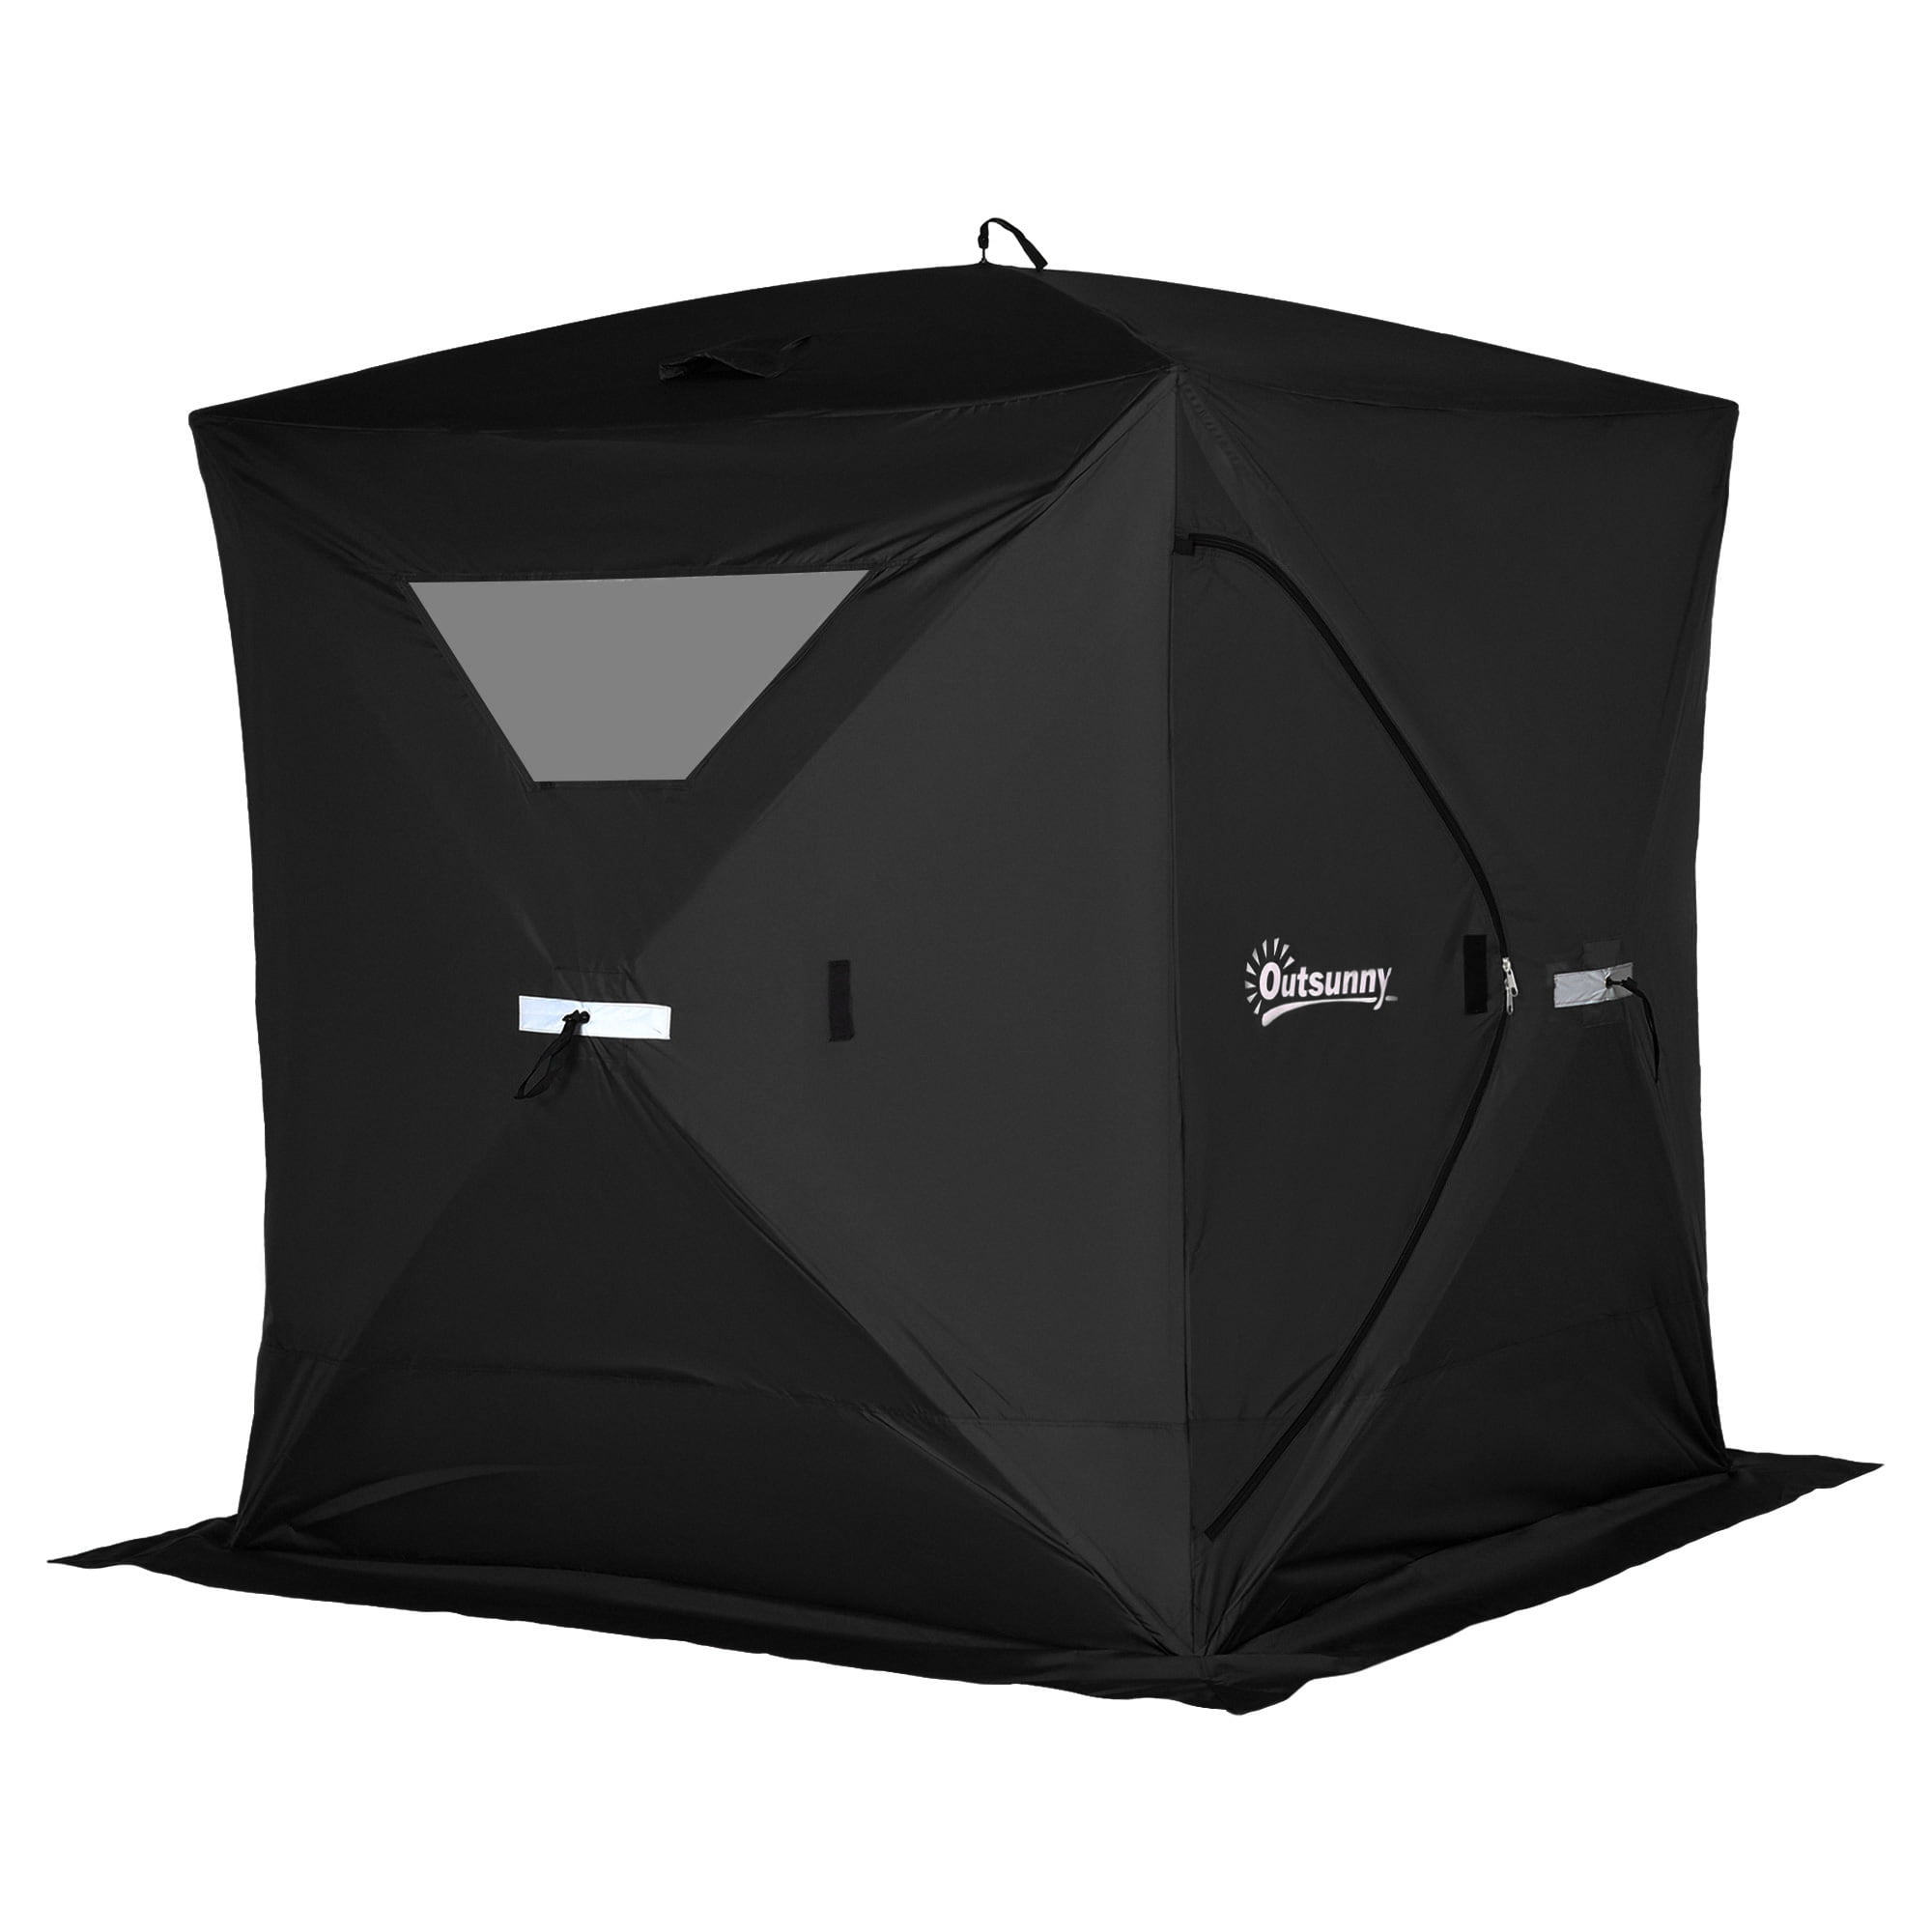 Eskimo QuickFish 2i Portable Insulated Shelter-2 Person 